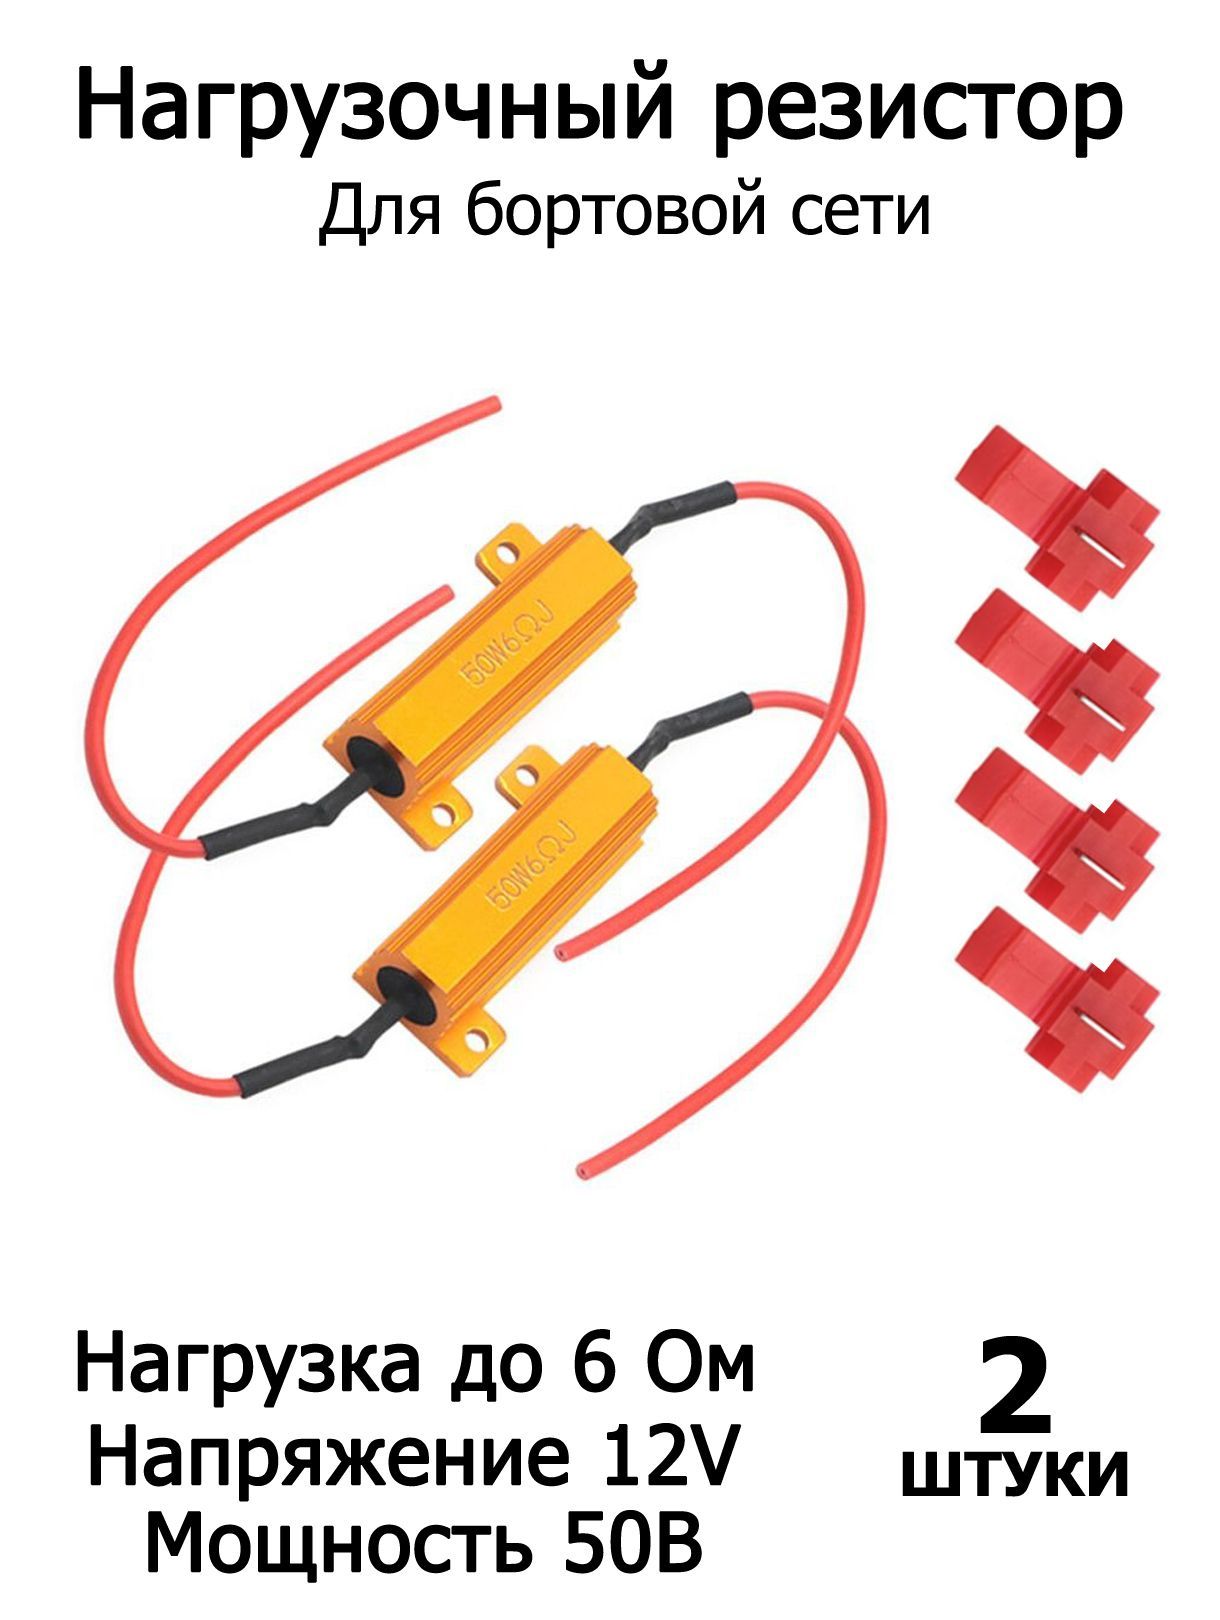 DLEDБлокобманкадлясветодиодоварт.resistor